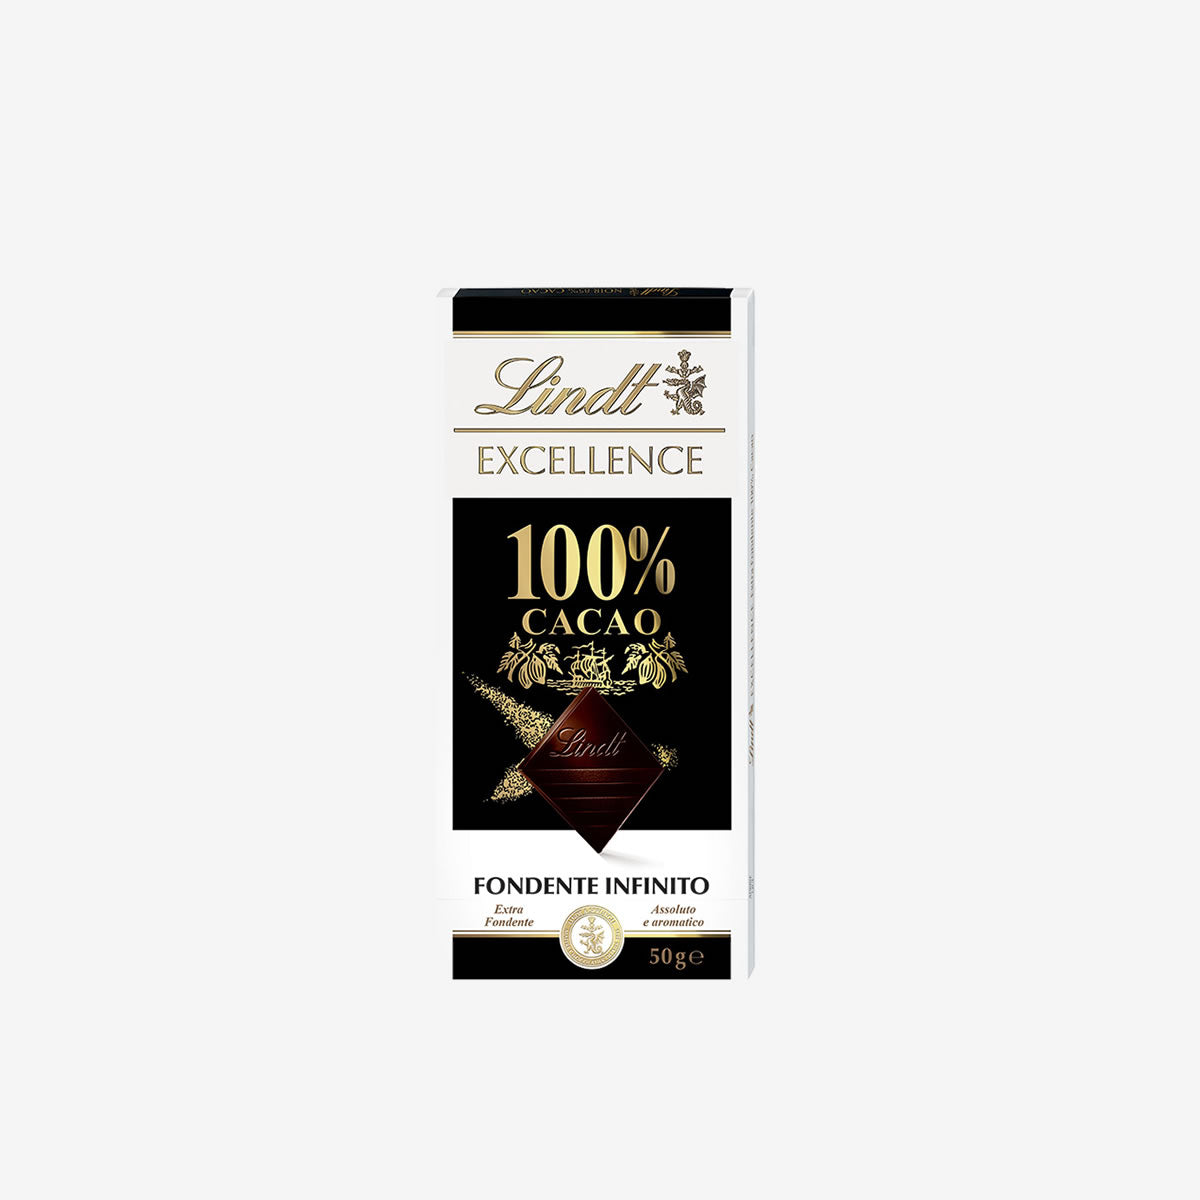 Excellence 100% Cocoa bar